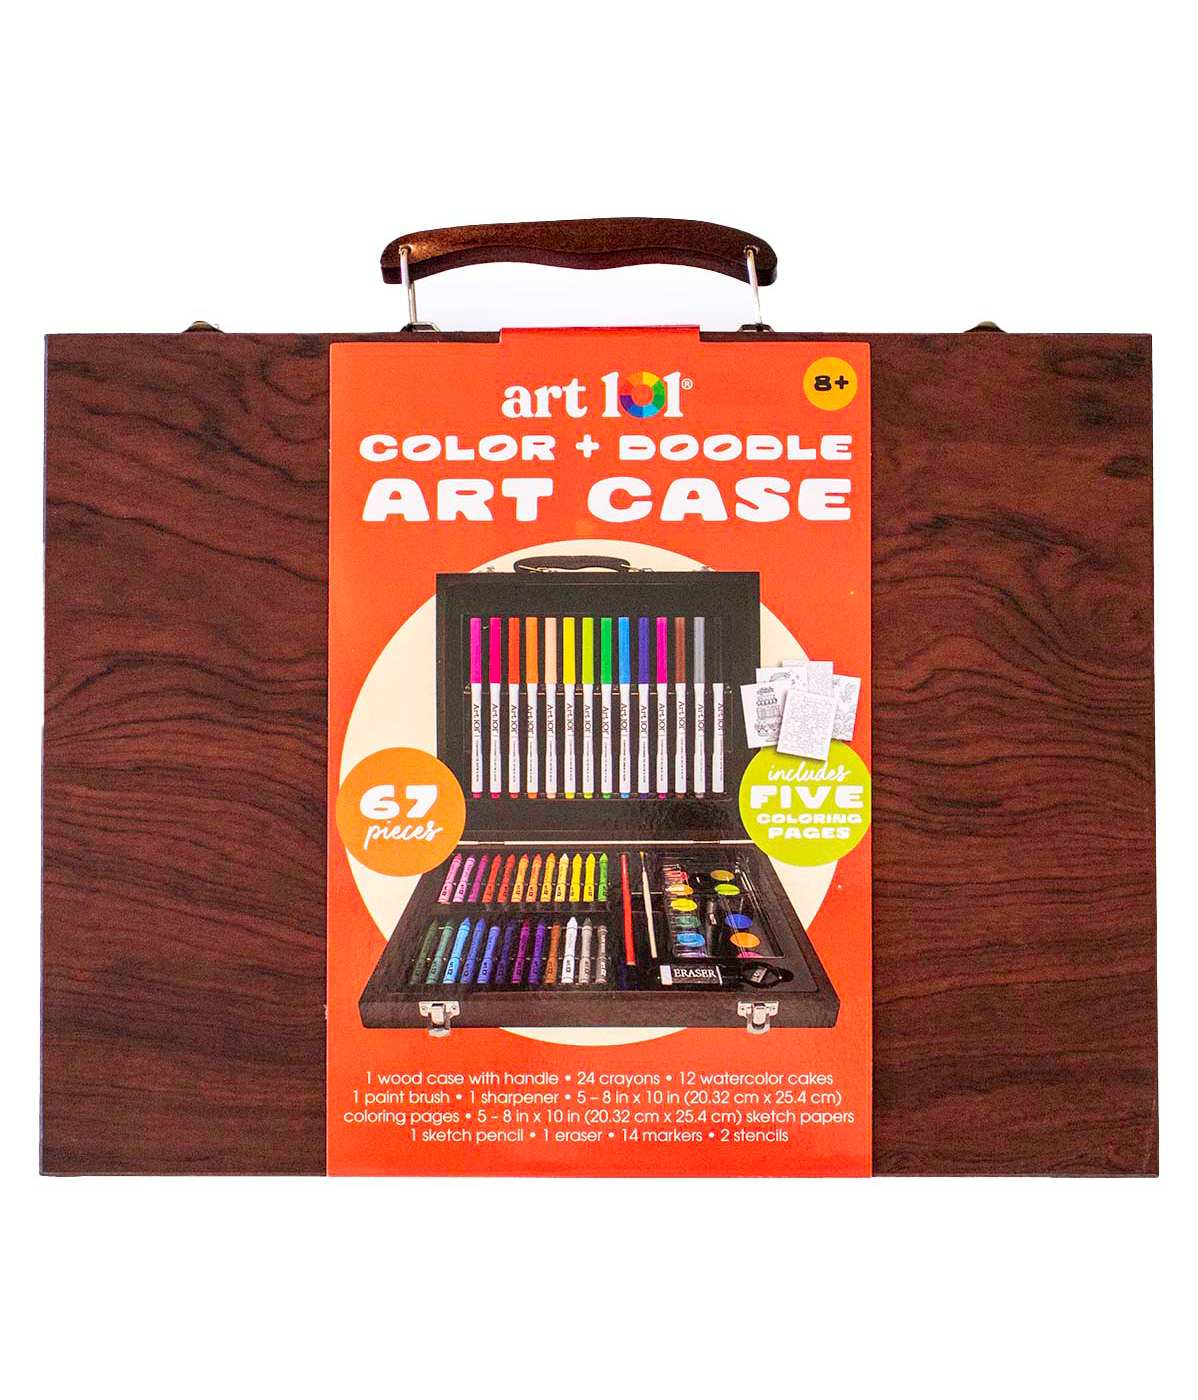 Art 101 Color & Doodle Art Case; image 1 of 8